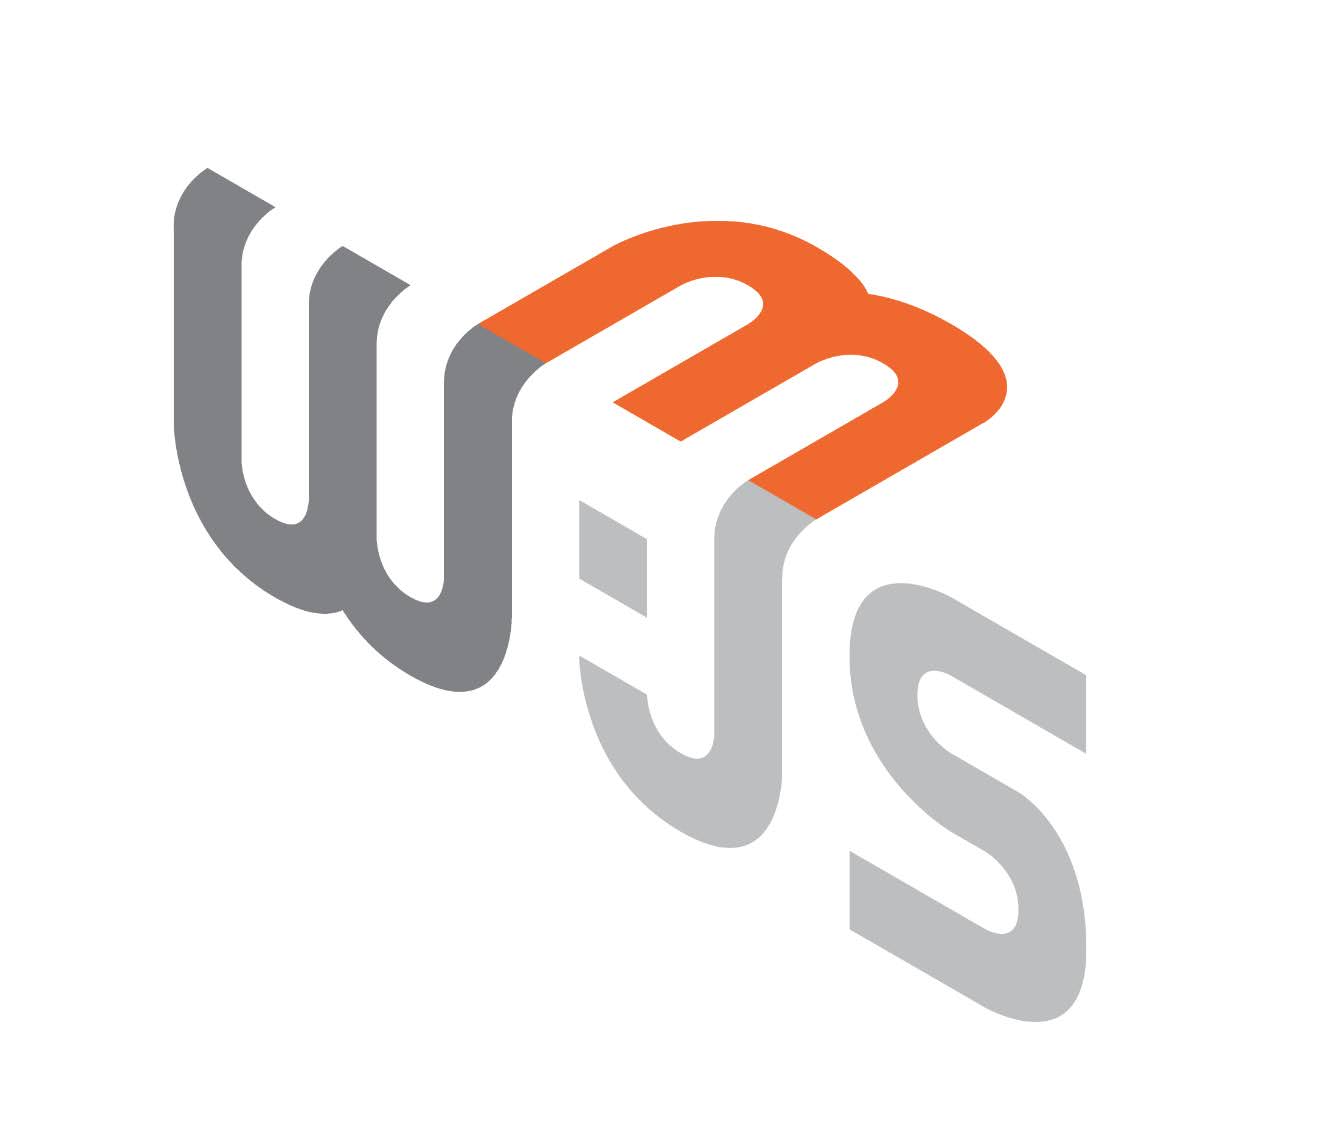 Web3.js logo.